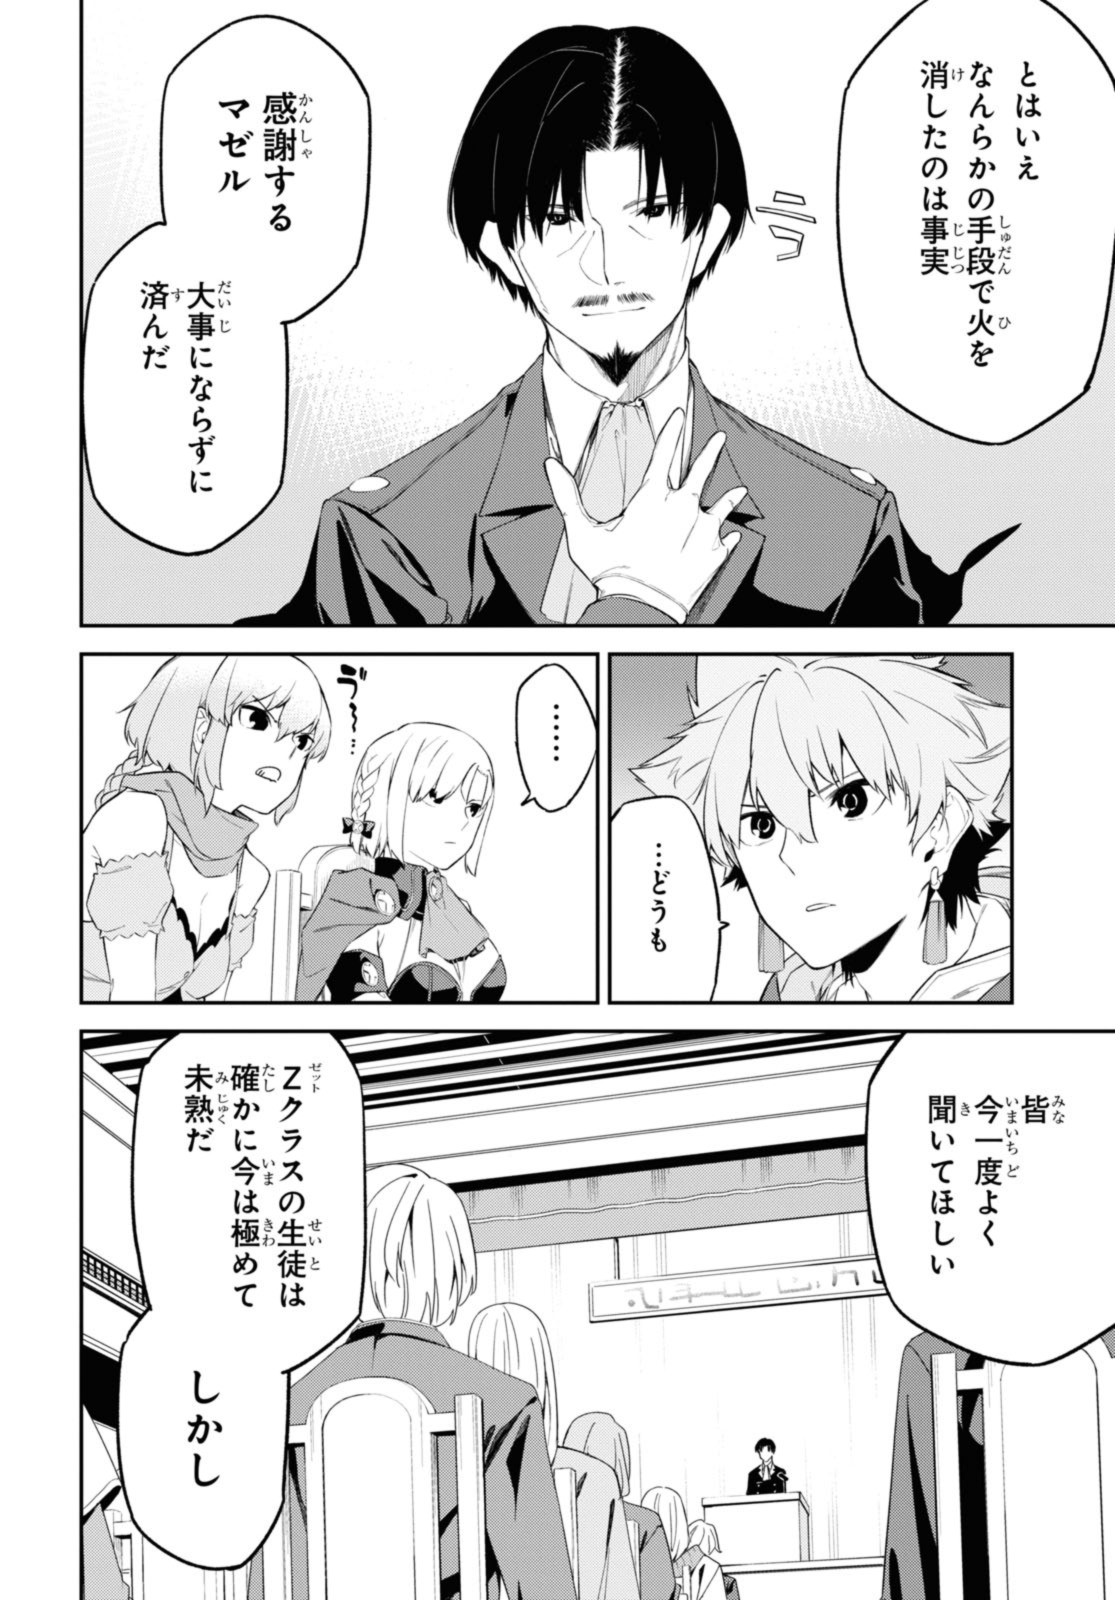 Maryoku 0 de Saikyou no Daikenja ~Sore wa Mahou dewa Nai, Butsuri da!~ - Chapter 38.2 - Page 3